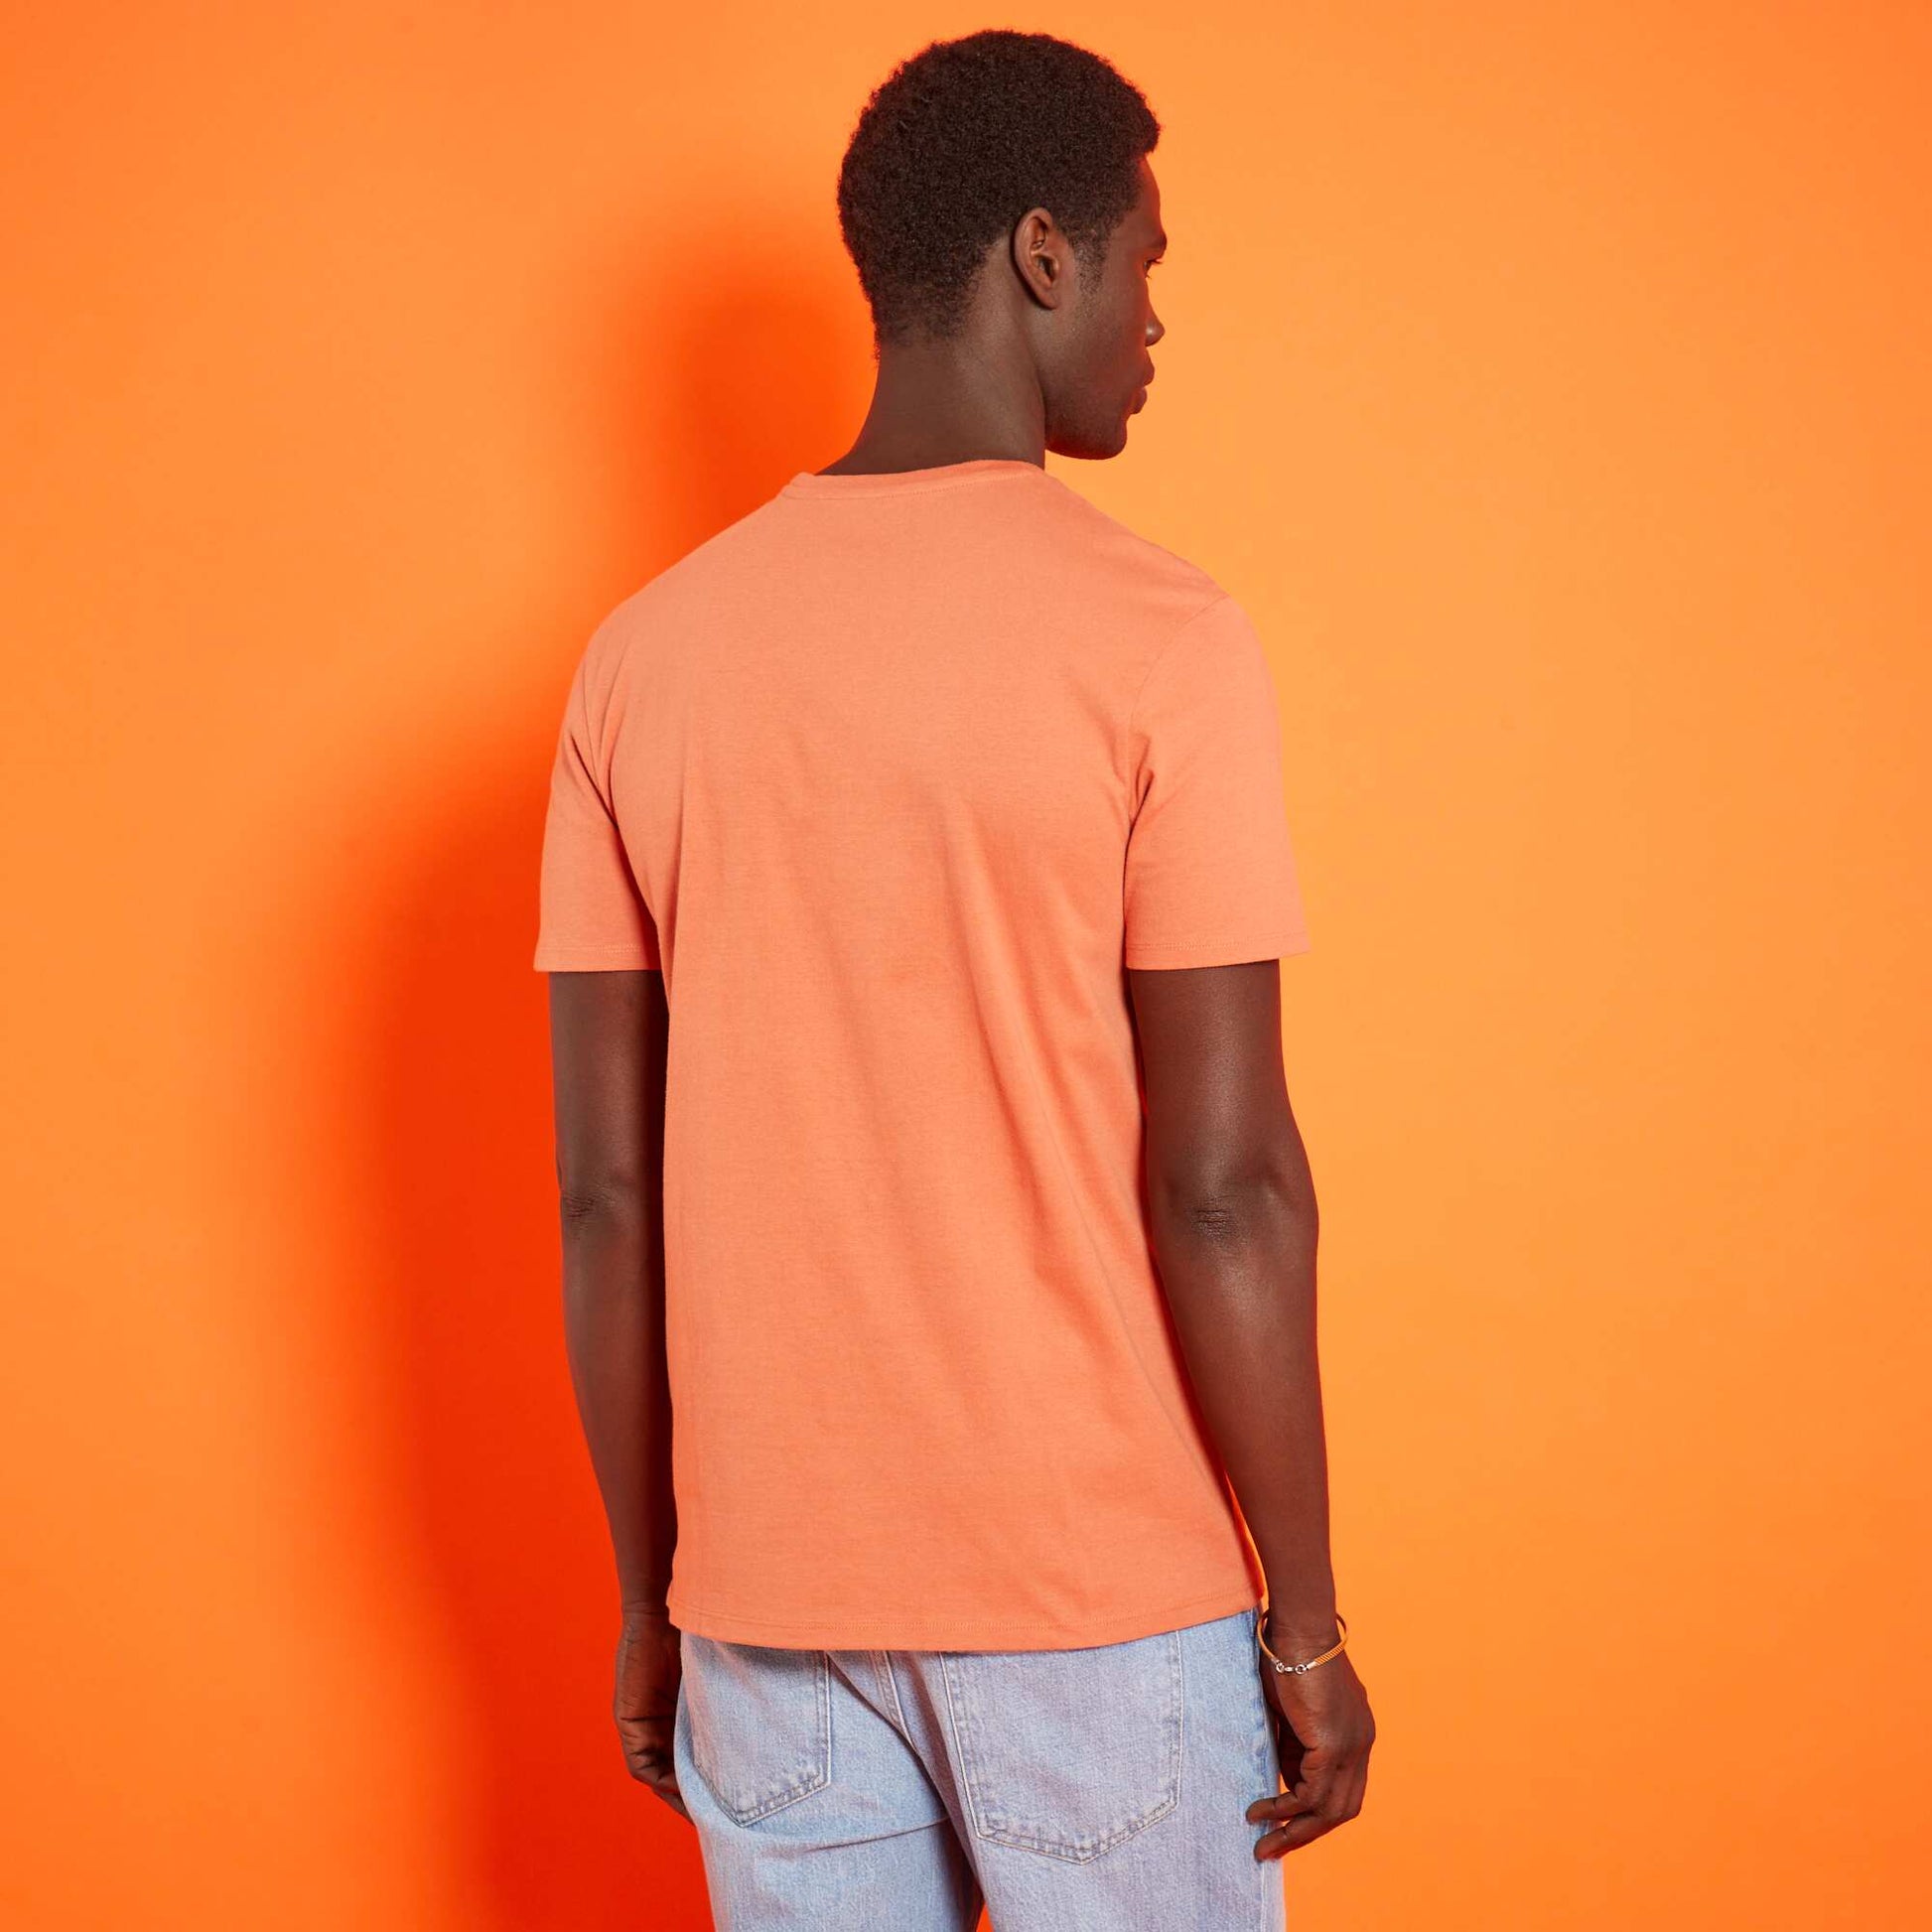 Rebajas Camisetas de mujer - naranja - Kiabi